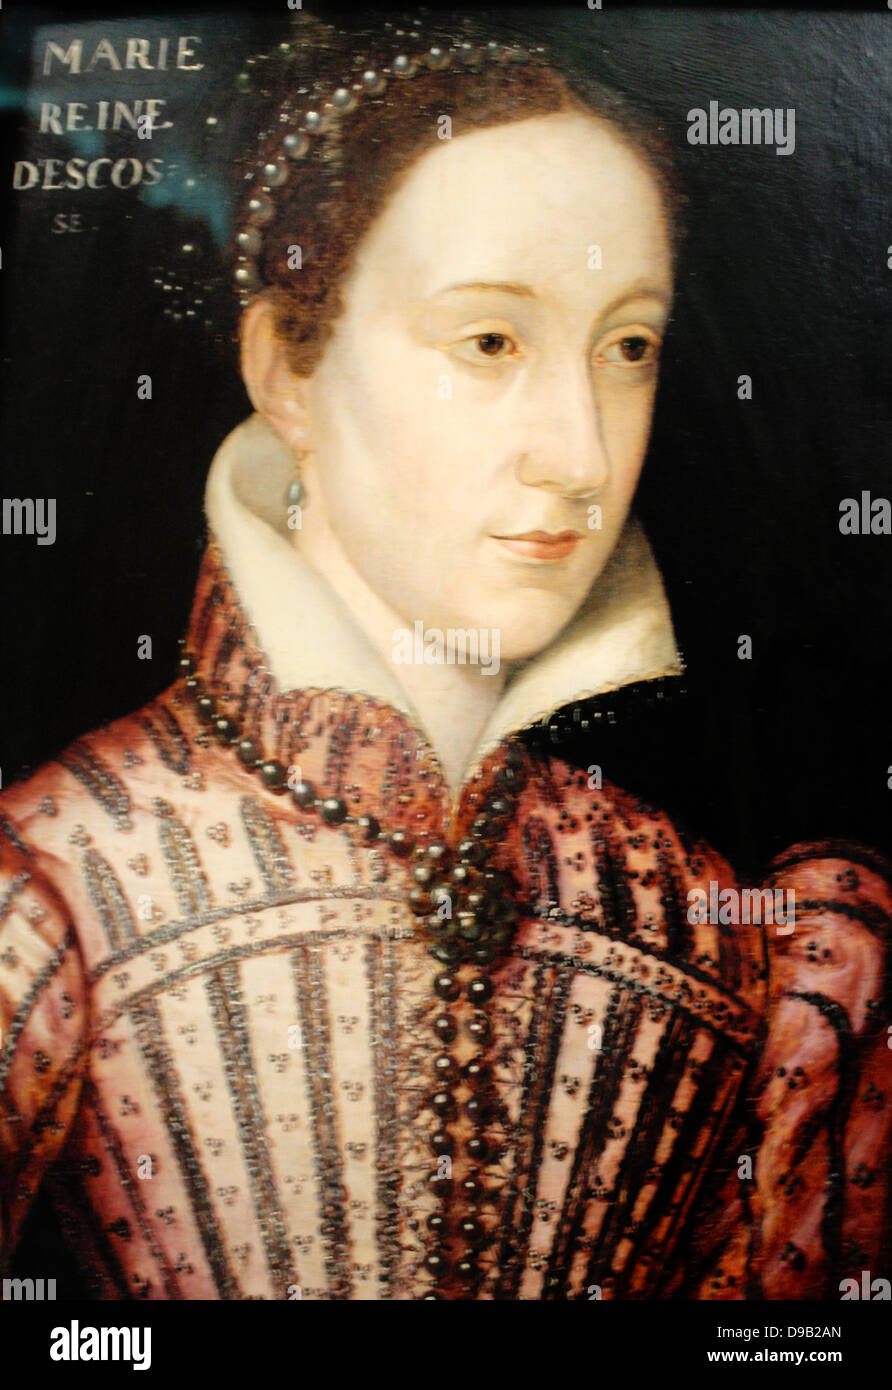 Portrait von Maria, Königin von Schottland, ca. 1558. Öl auf Eichenholz. Das Porträt zeigt Maria über 17 Jahren, kurz nach ihrer Hochzeit im 1558 Francois, Erben auf den französischen Thron. Mary's französischen Mutter gewährleistet sie aufgewachsen an der kultivierten Hof von Frankreich. Stockfoto